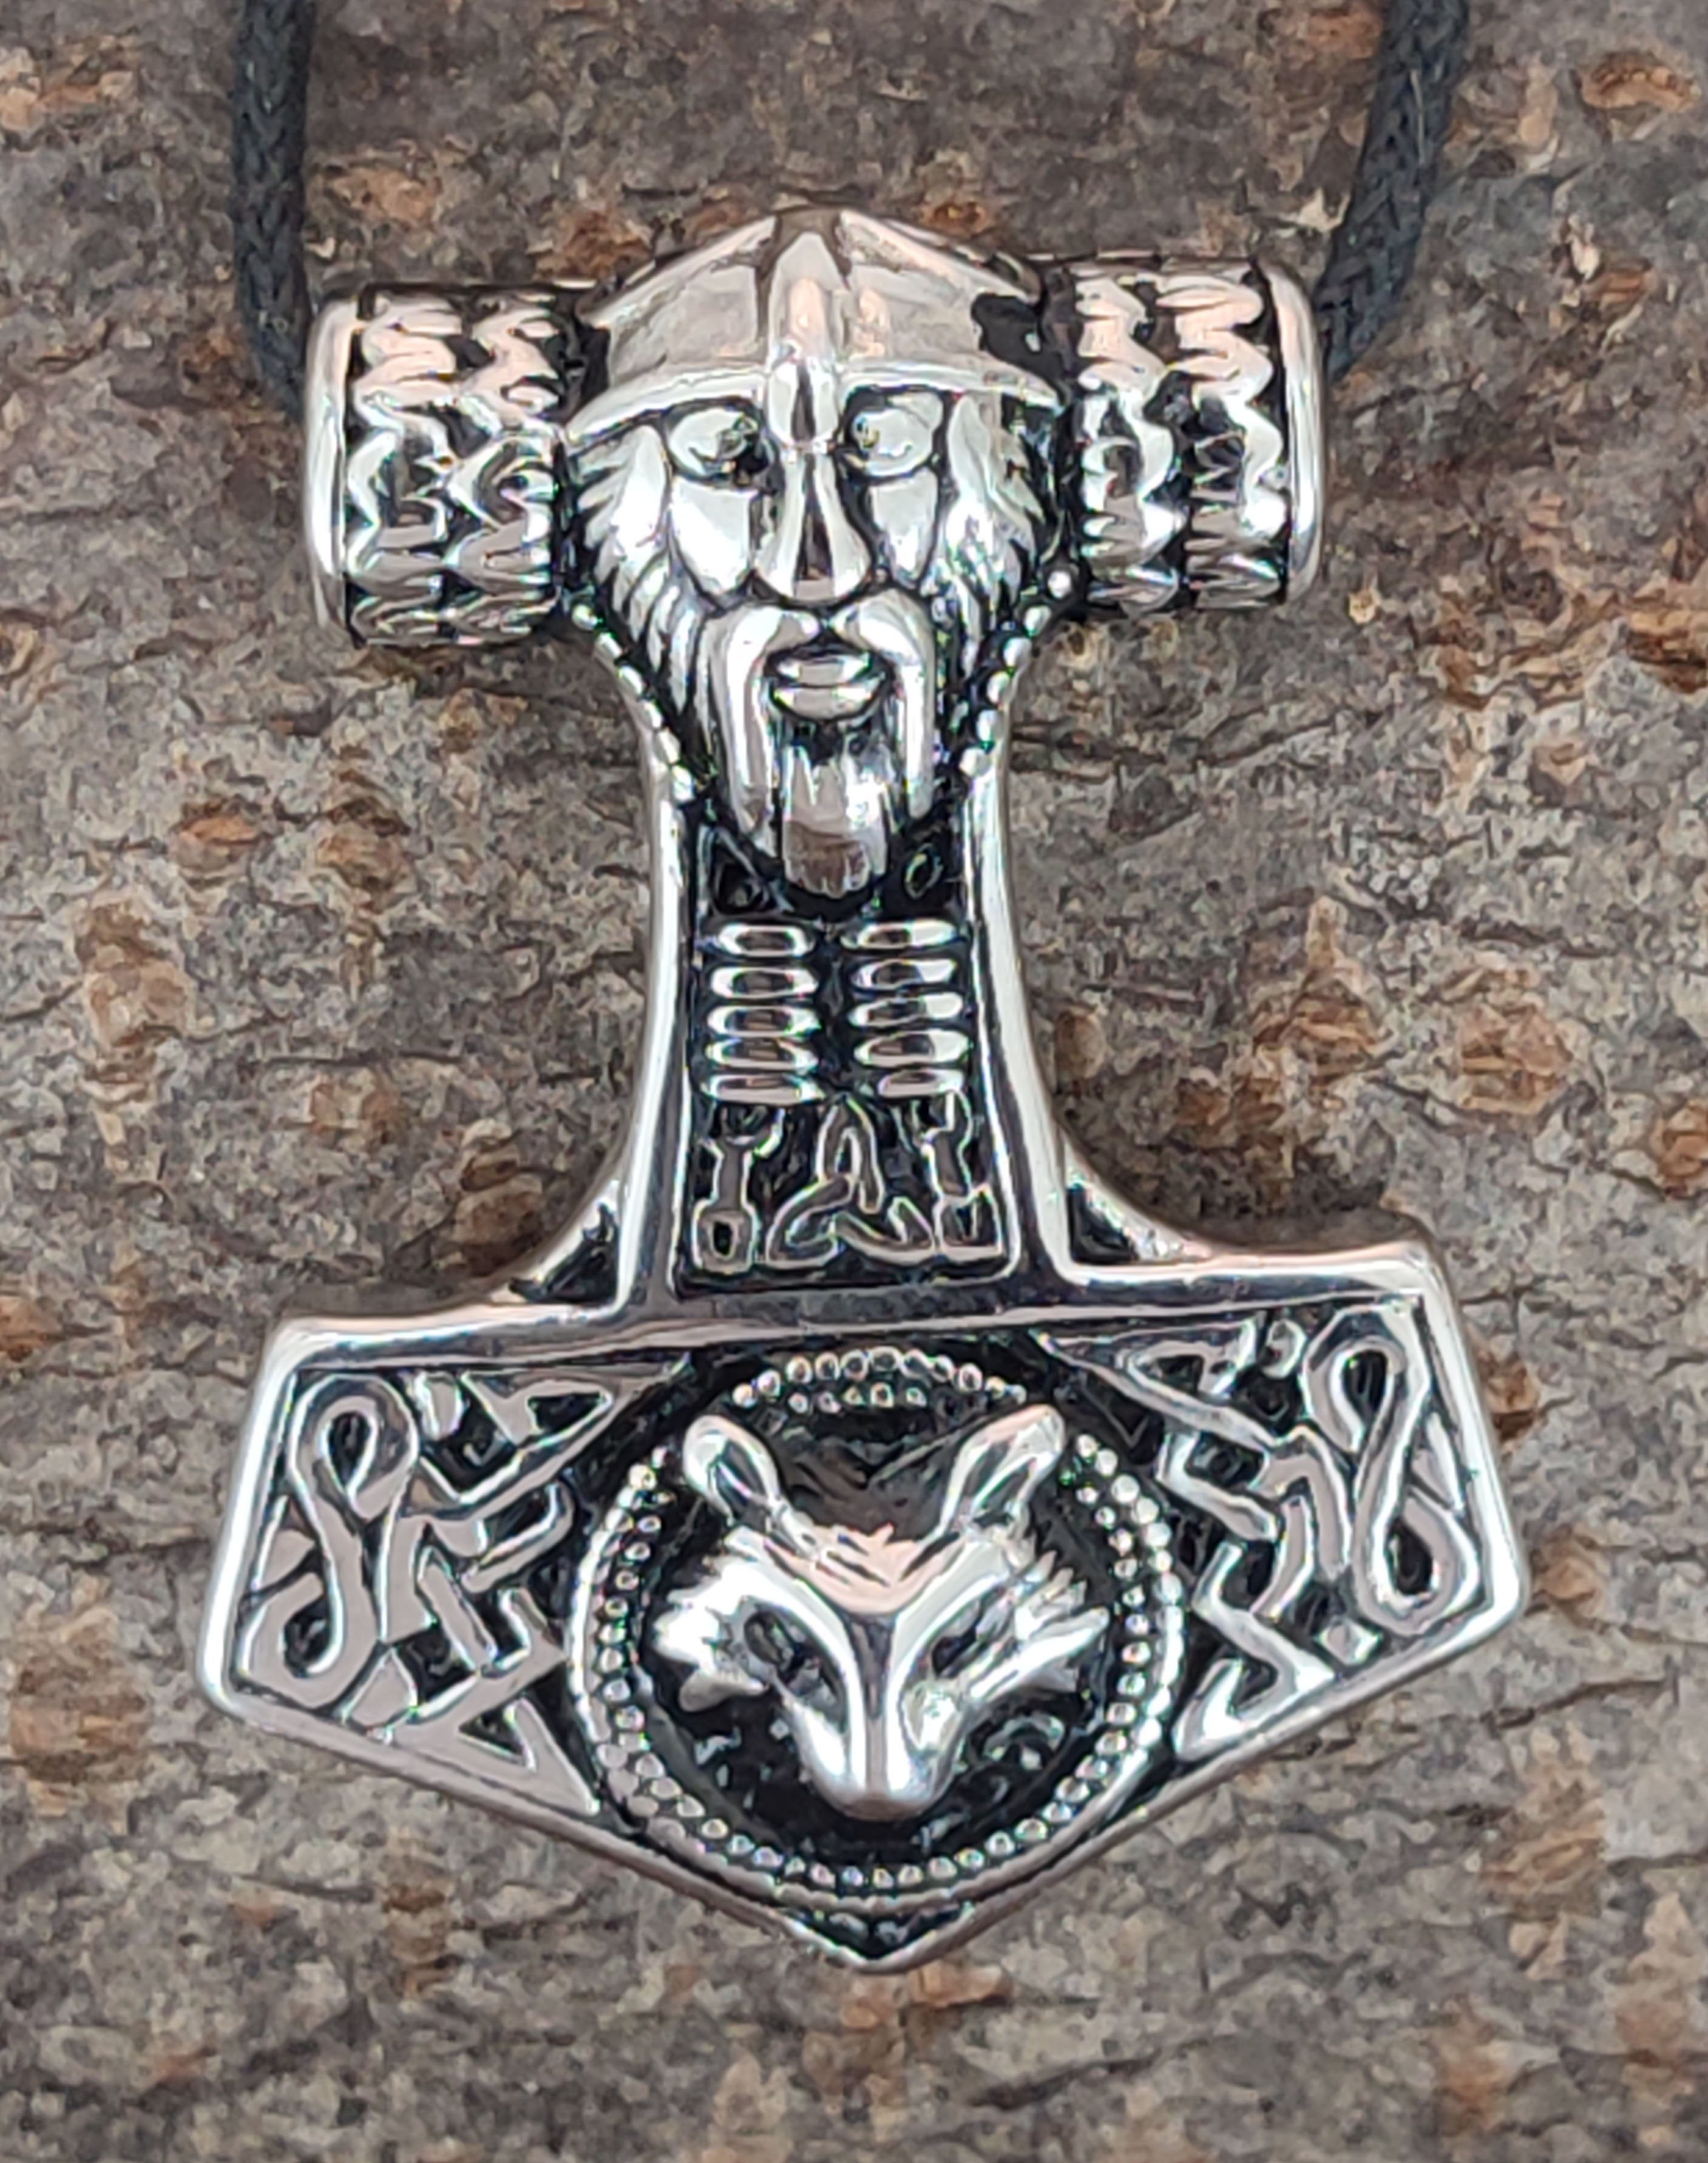 horshammer Odin of Thor Leather Kiss Edelstahl Kettenanhänger Thorhammer Wolf Edelstahl